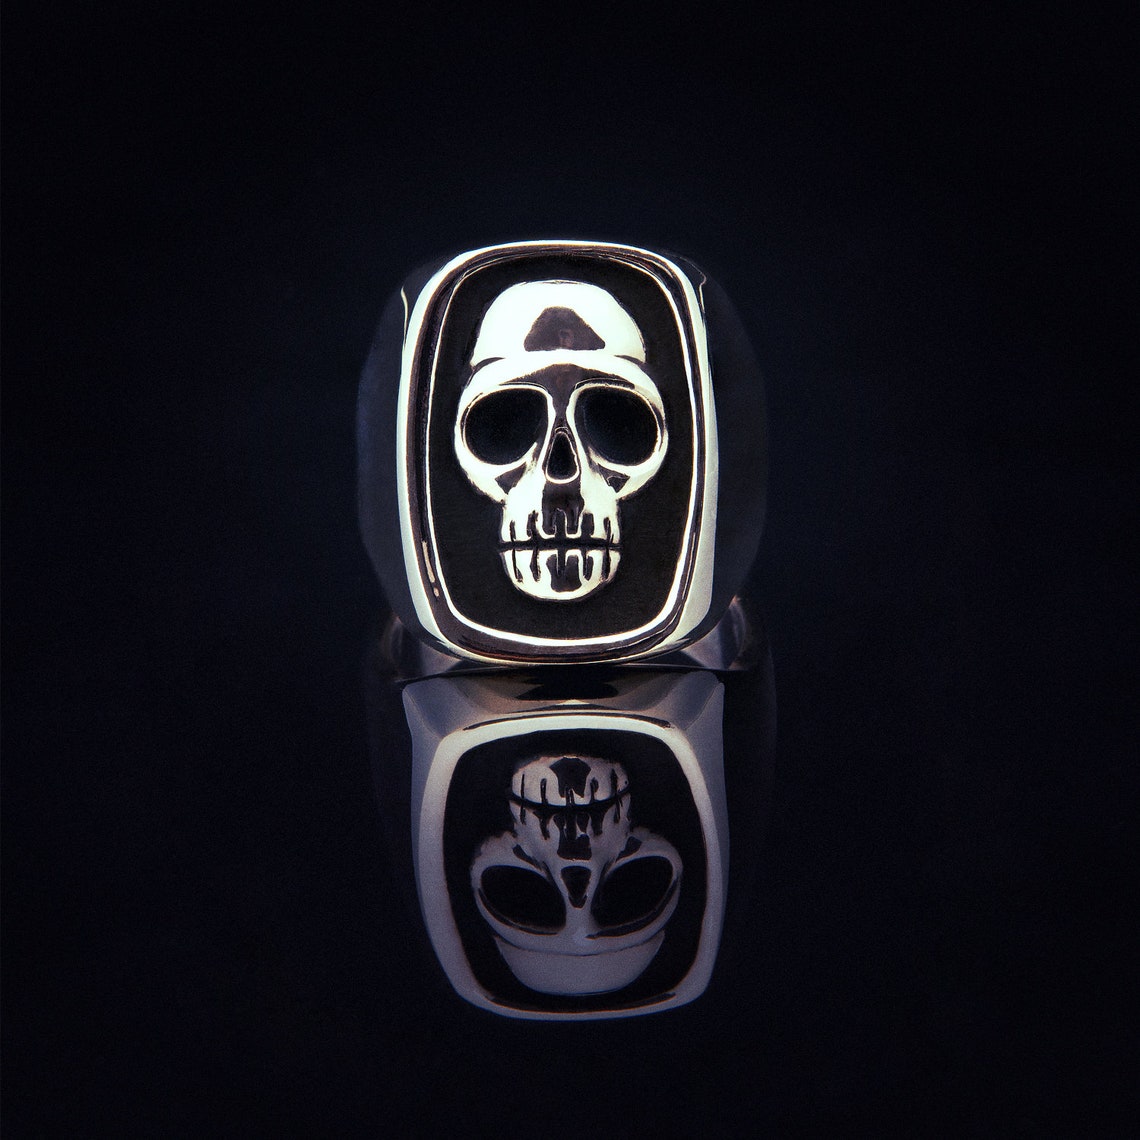 Phantom Silver Skull Ring Handcrafted Rock Biker Punk | Etsy